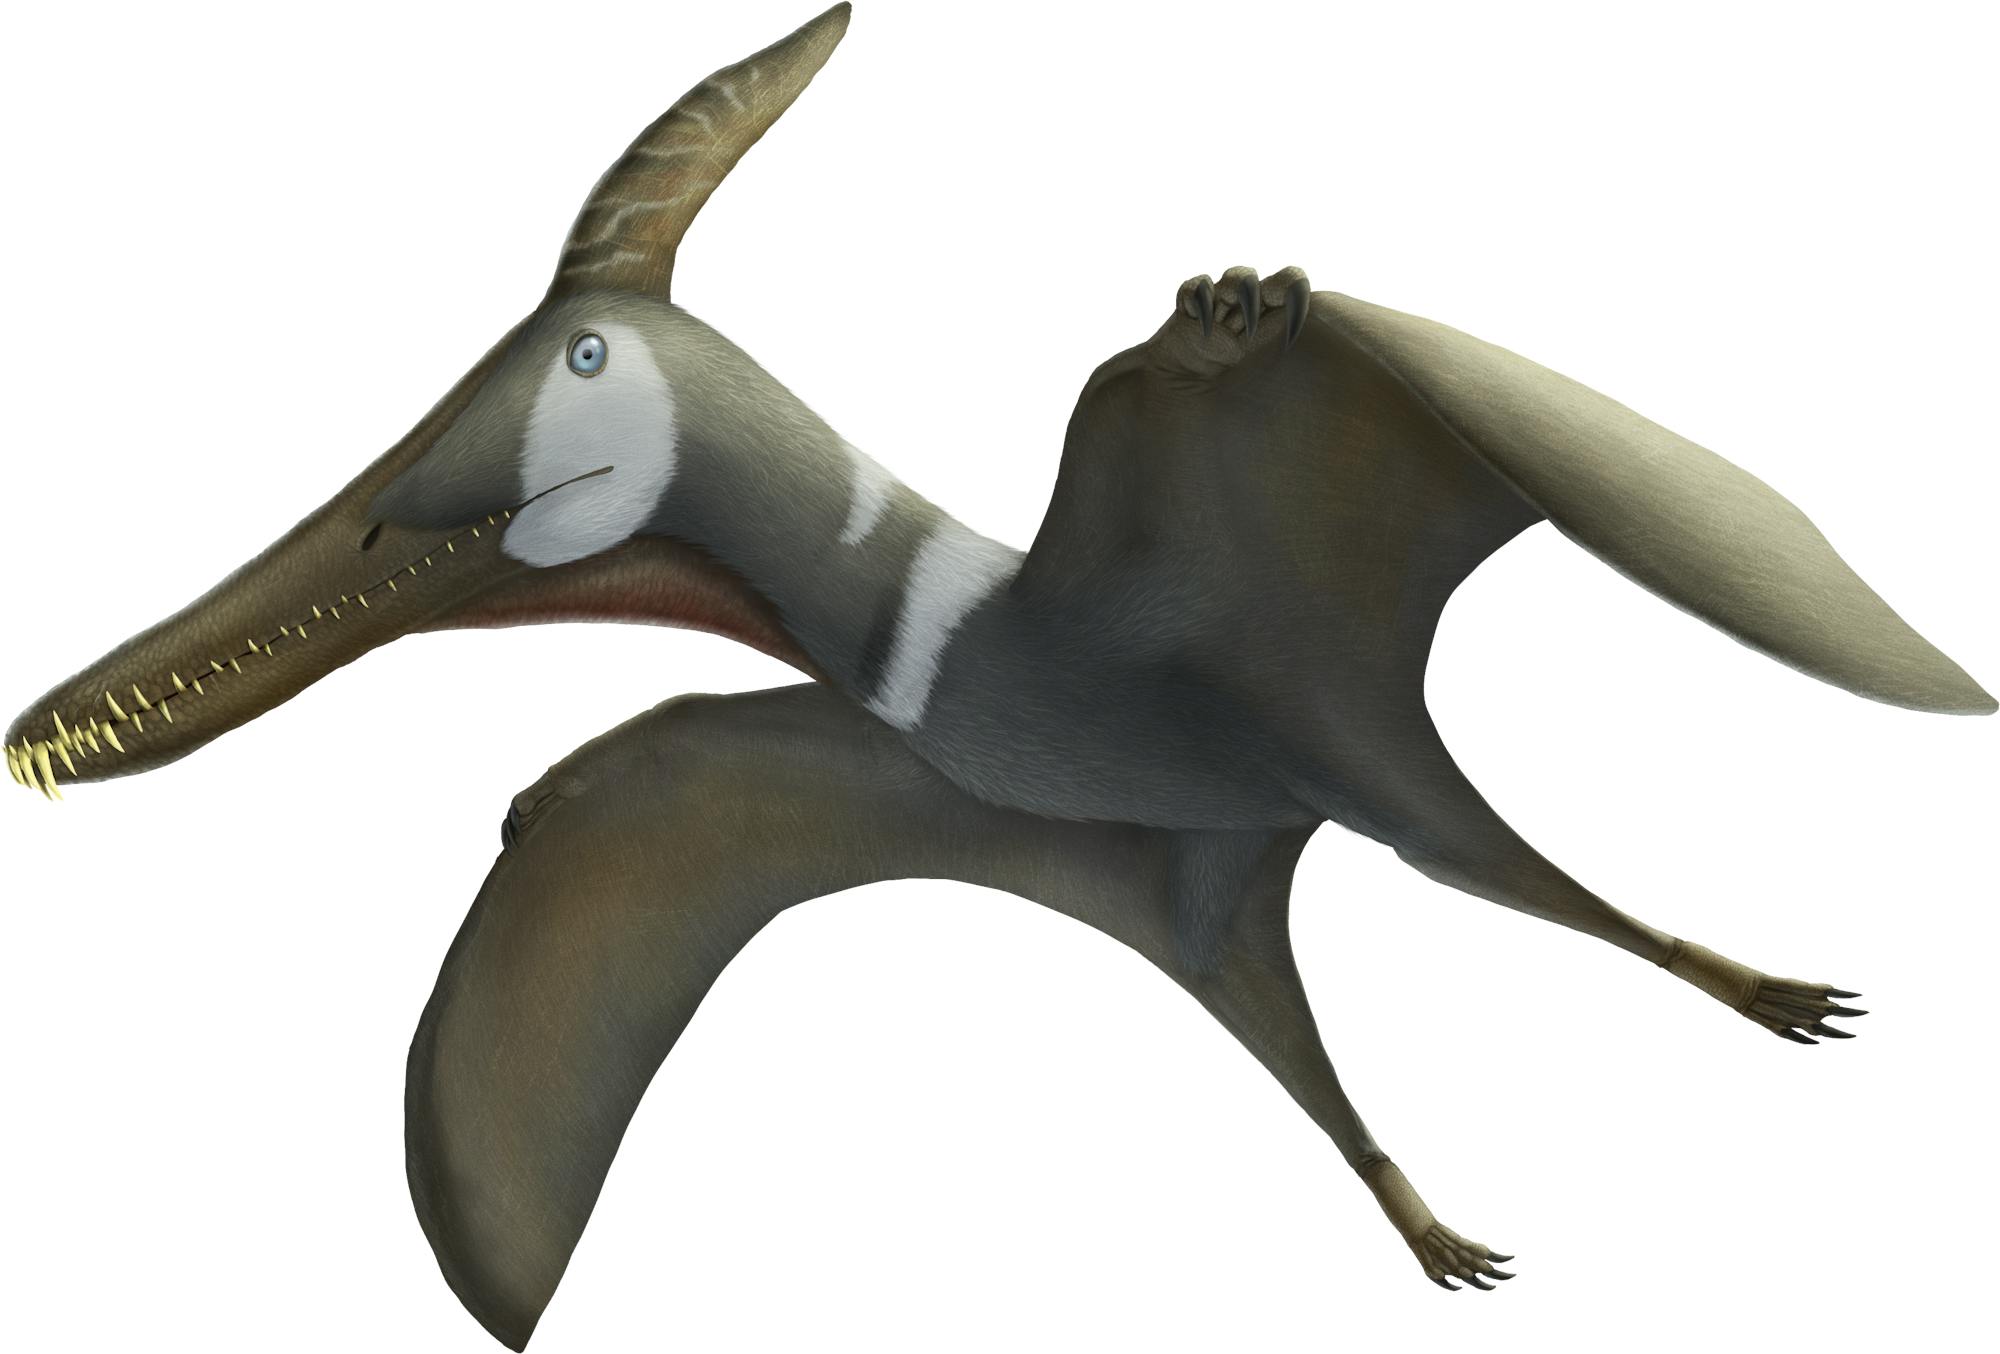 Pteranodon - Pteros